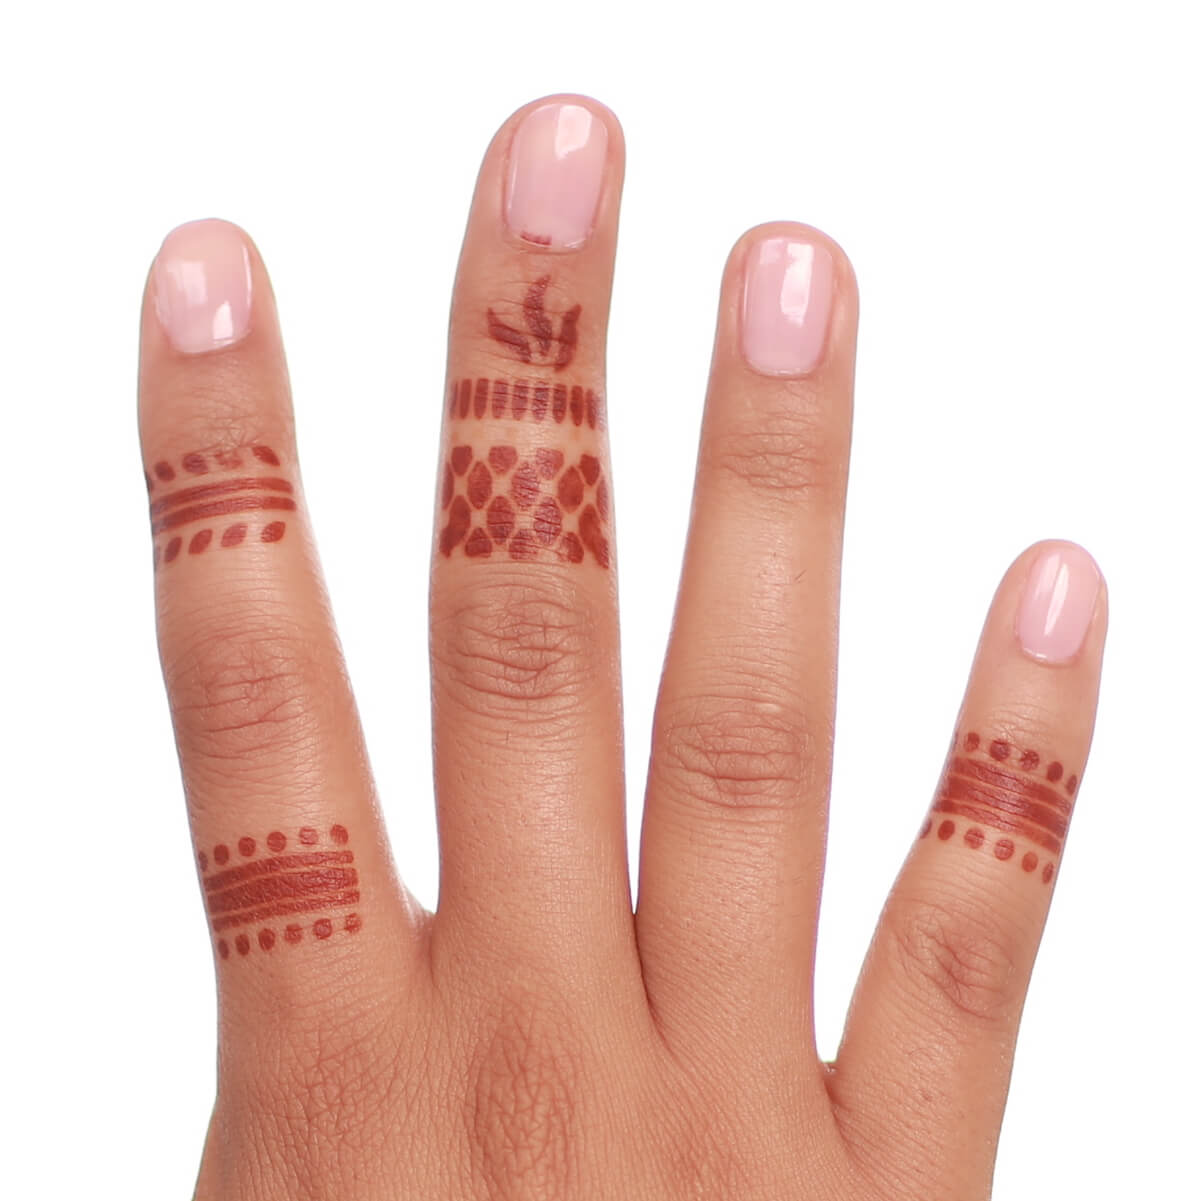 Mihenna The Ring Henna Kit